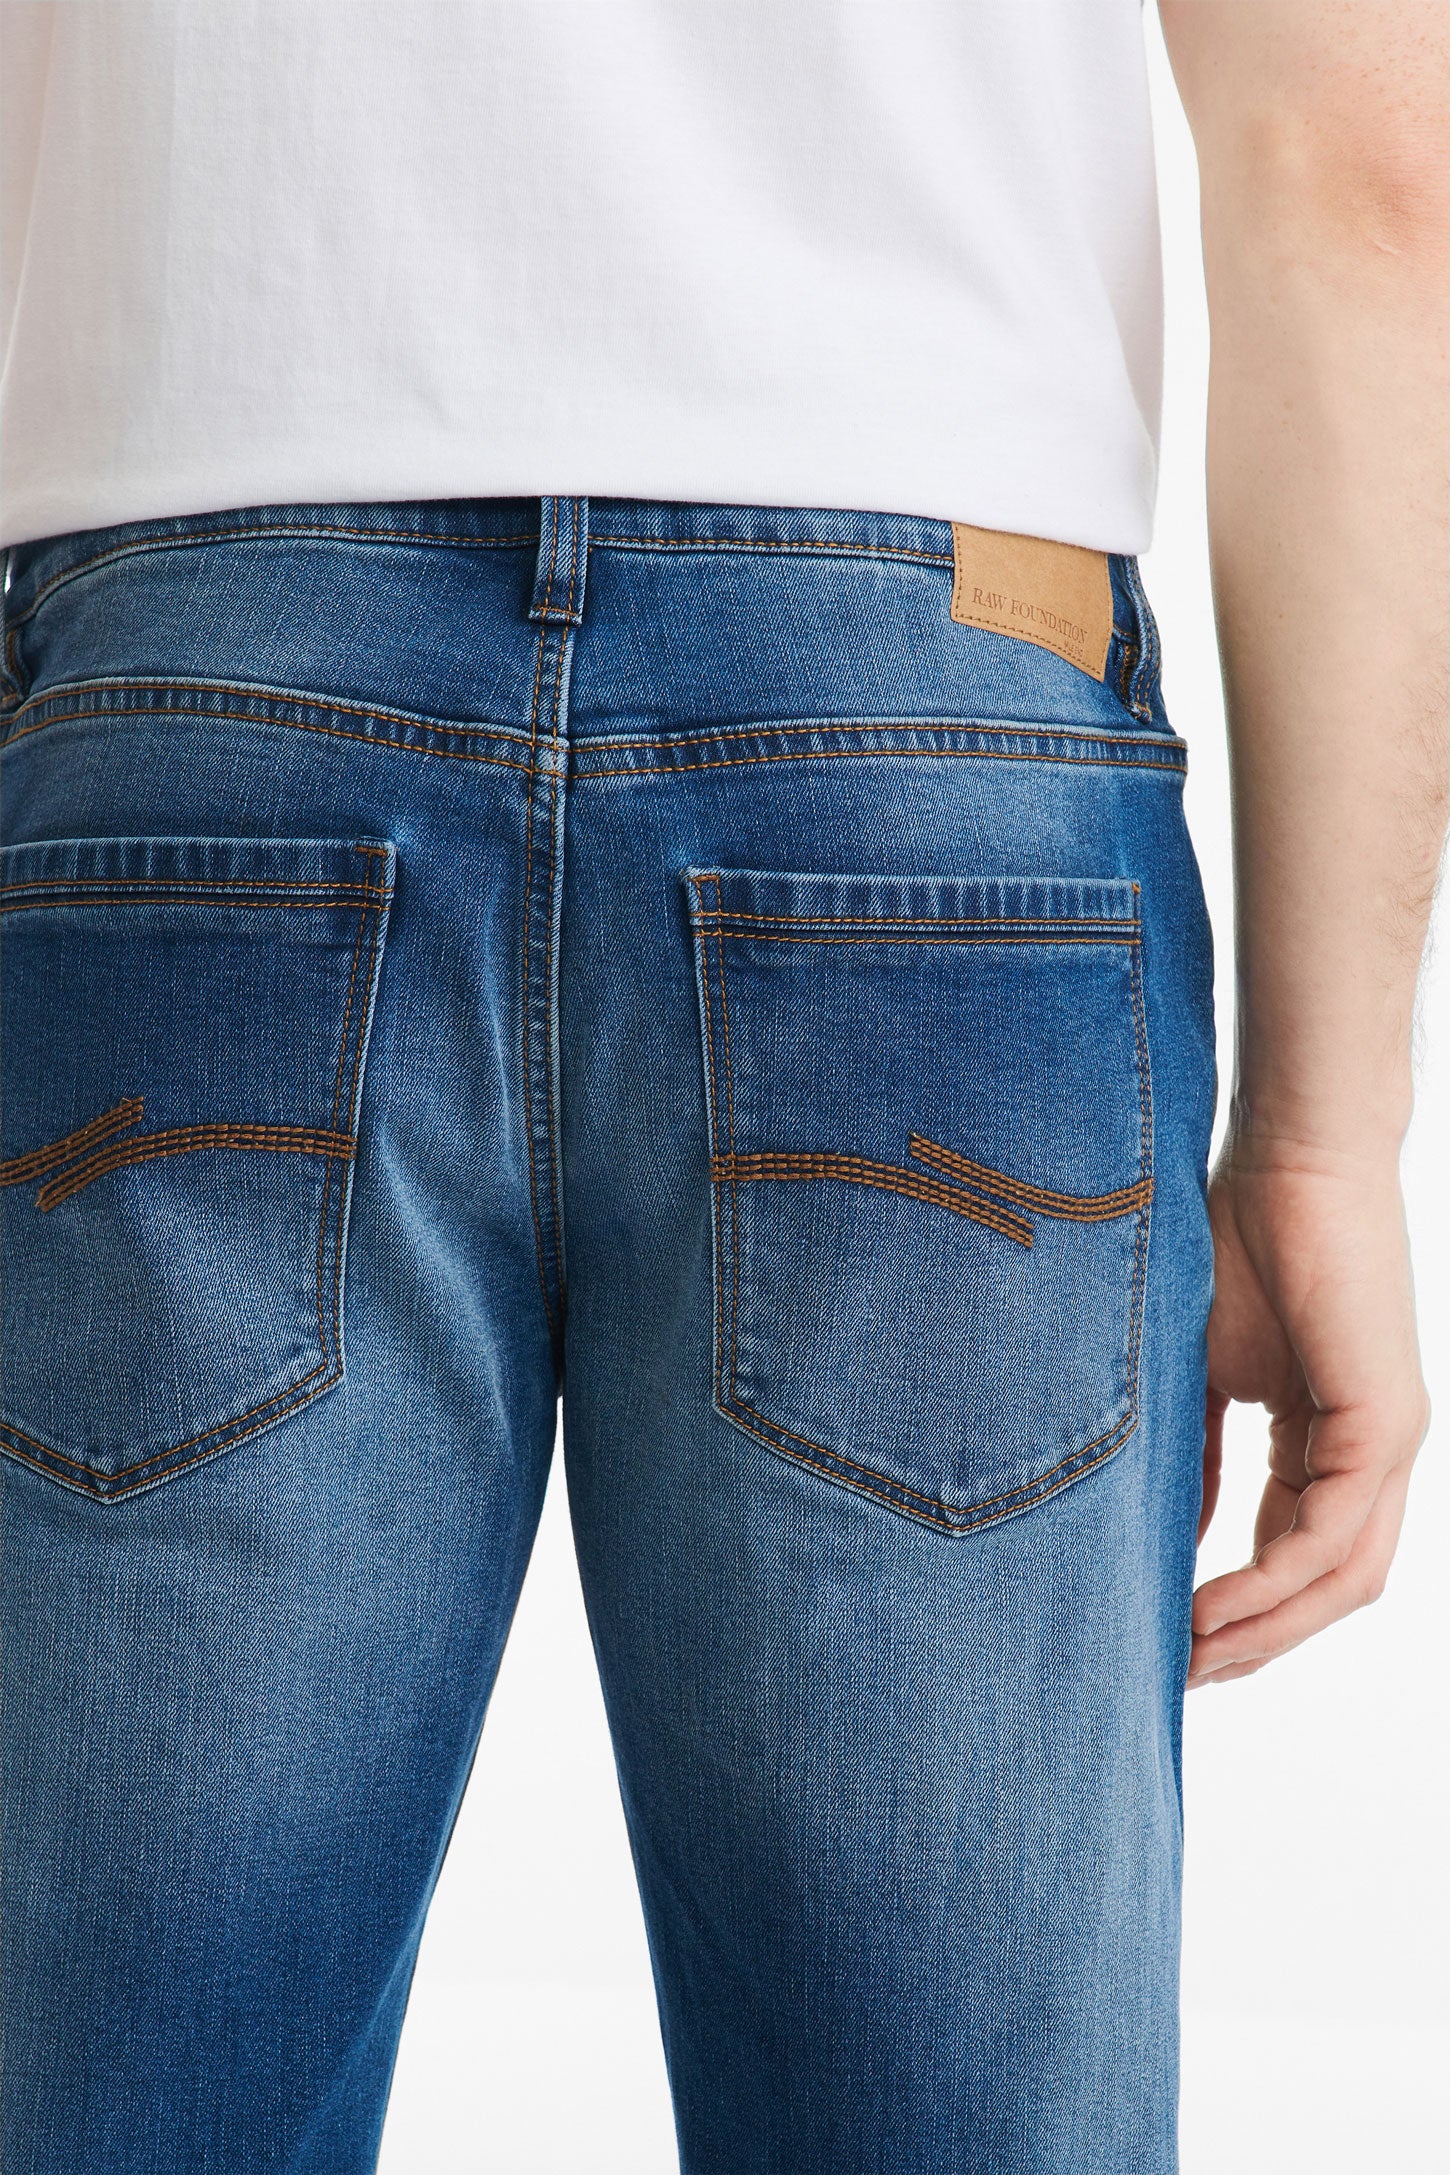 Jeans 5 poches coupe régulière 30'' - Homme && MARIN